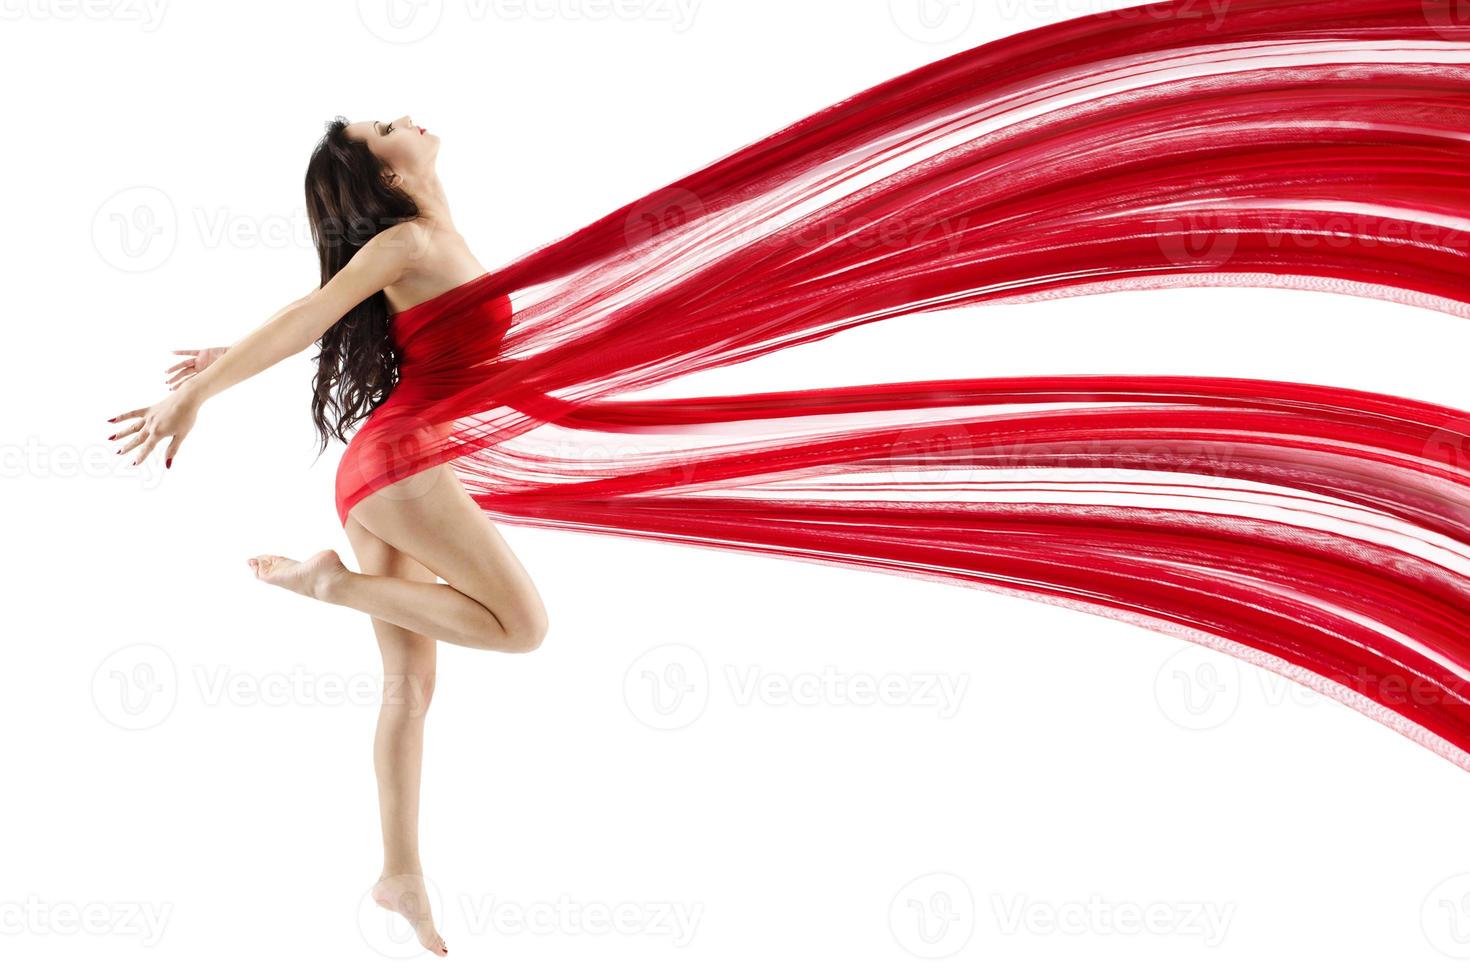 mujer bailando con tela de gasa roja ondeando volando foto